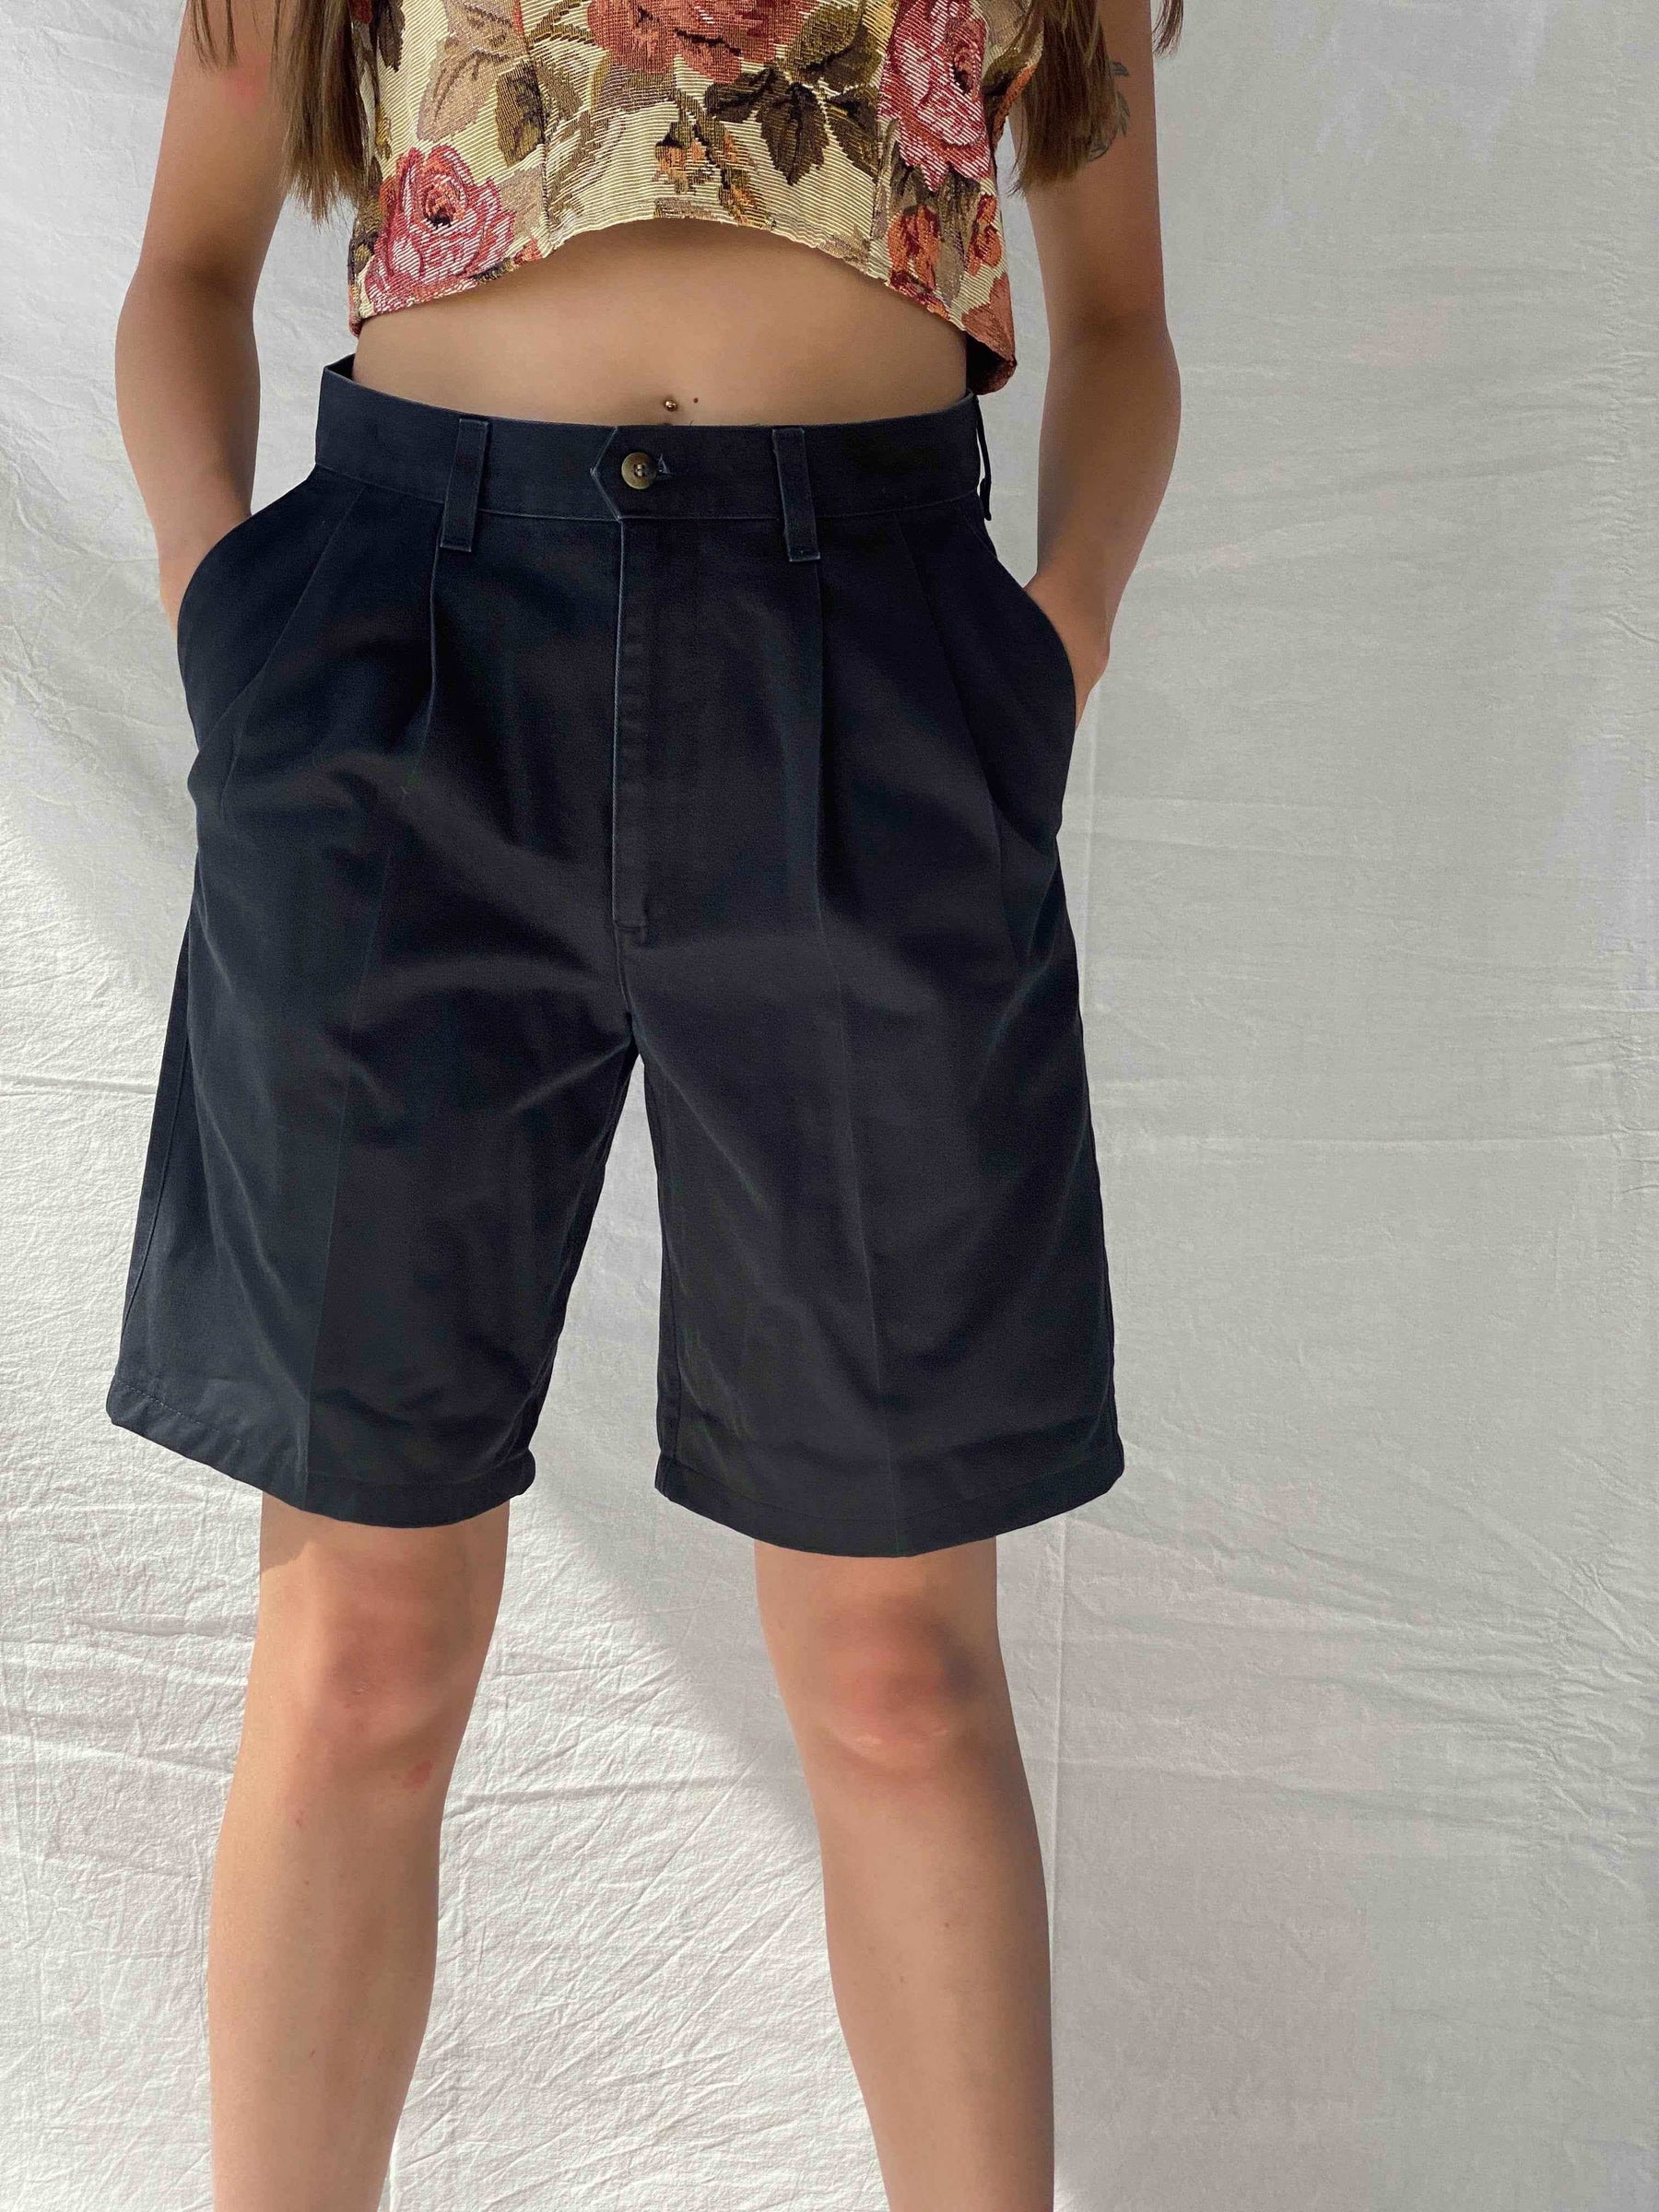 Reworked Dockers Shorts - Balagan Vintage